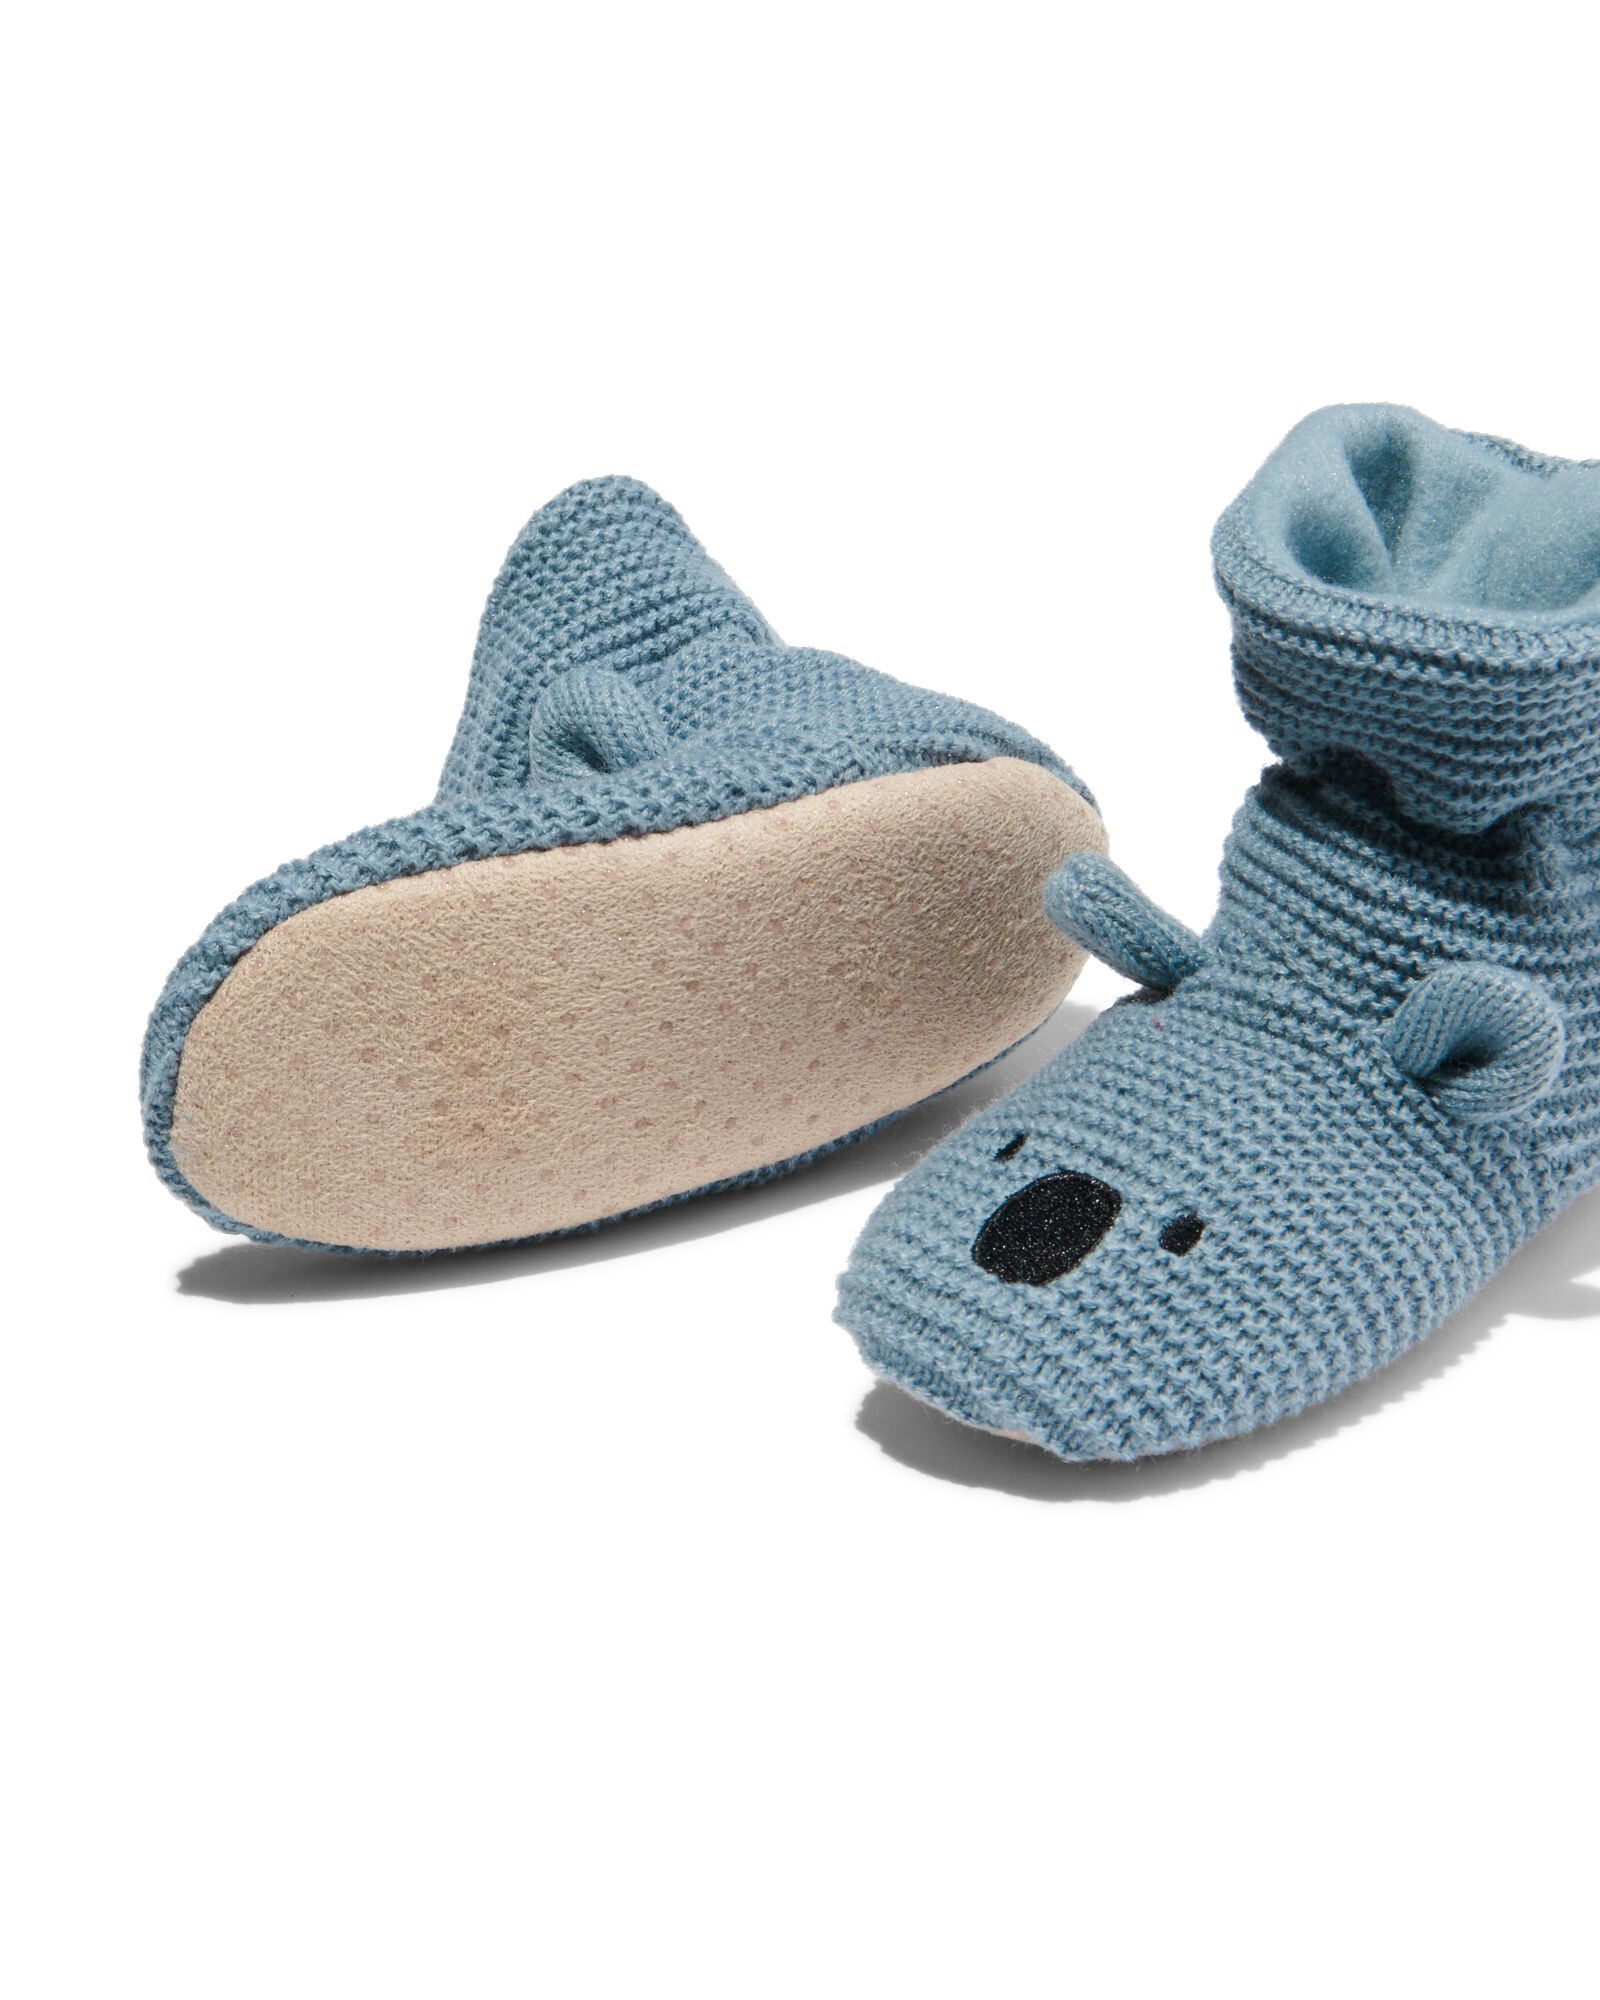 chaussons bébé en maille koala bleu bleu - 33236650BLUE - HEMA